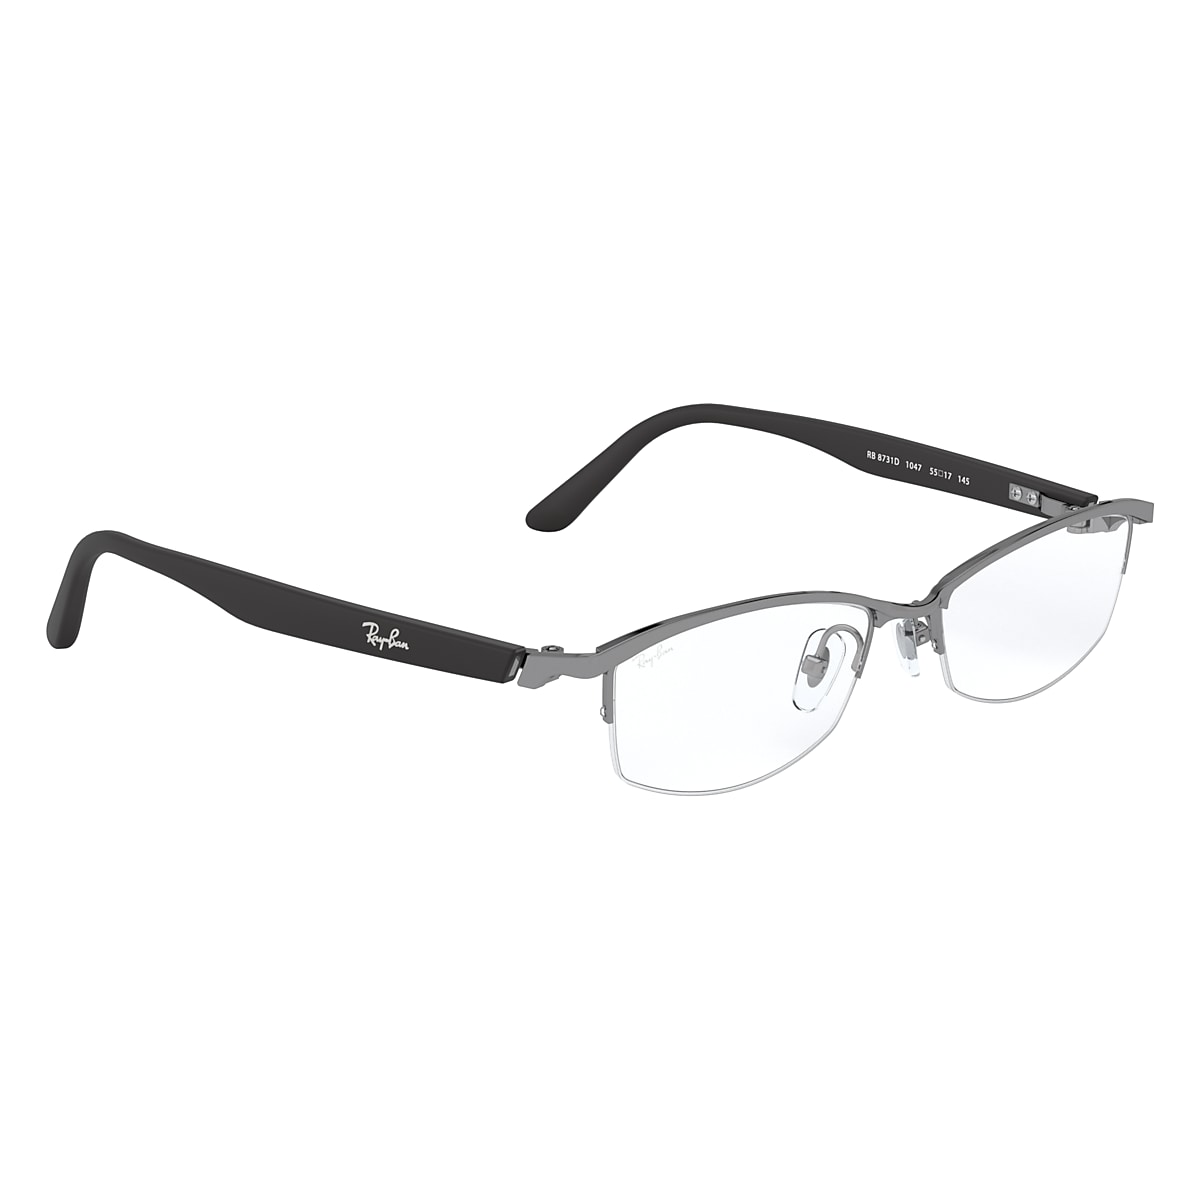 【新品】 レイバン メガネ rb8731d 1047 Ray-Ban 眼鏡 チタン rayban rx8731d ナイロール ハーフリム メンズ